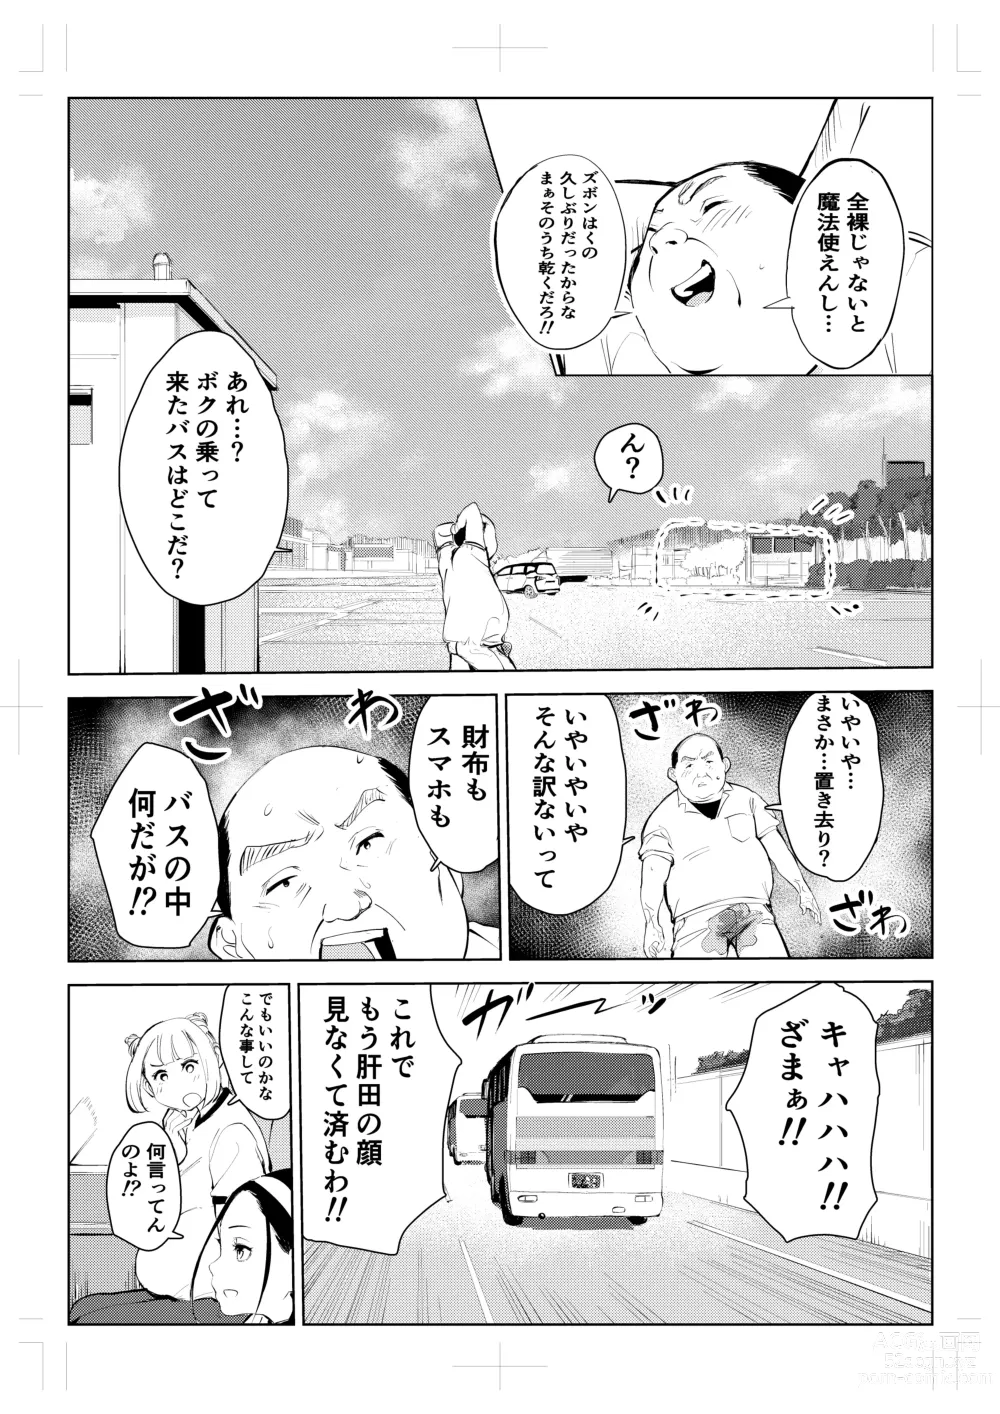 Page 13 of doujinshi 40-sai no Mahoutsukai 4